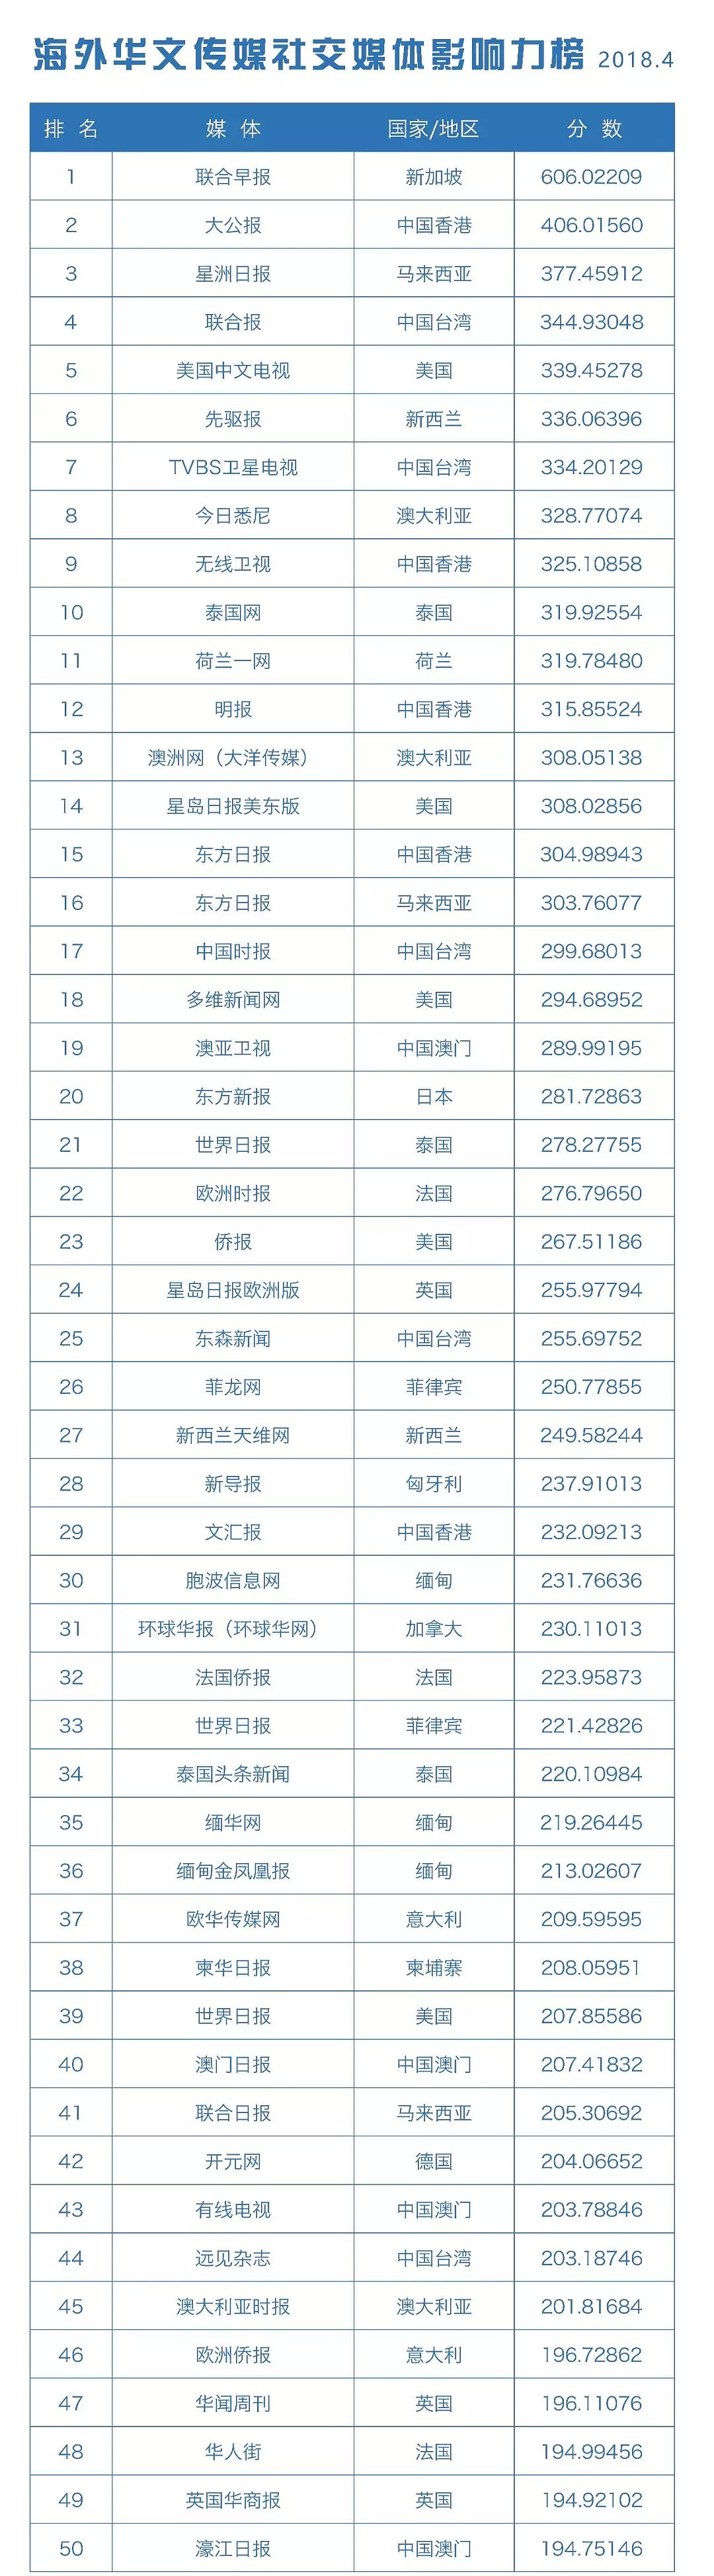 海外华文传媒新媒体影响力榜单发布 - 5